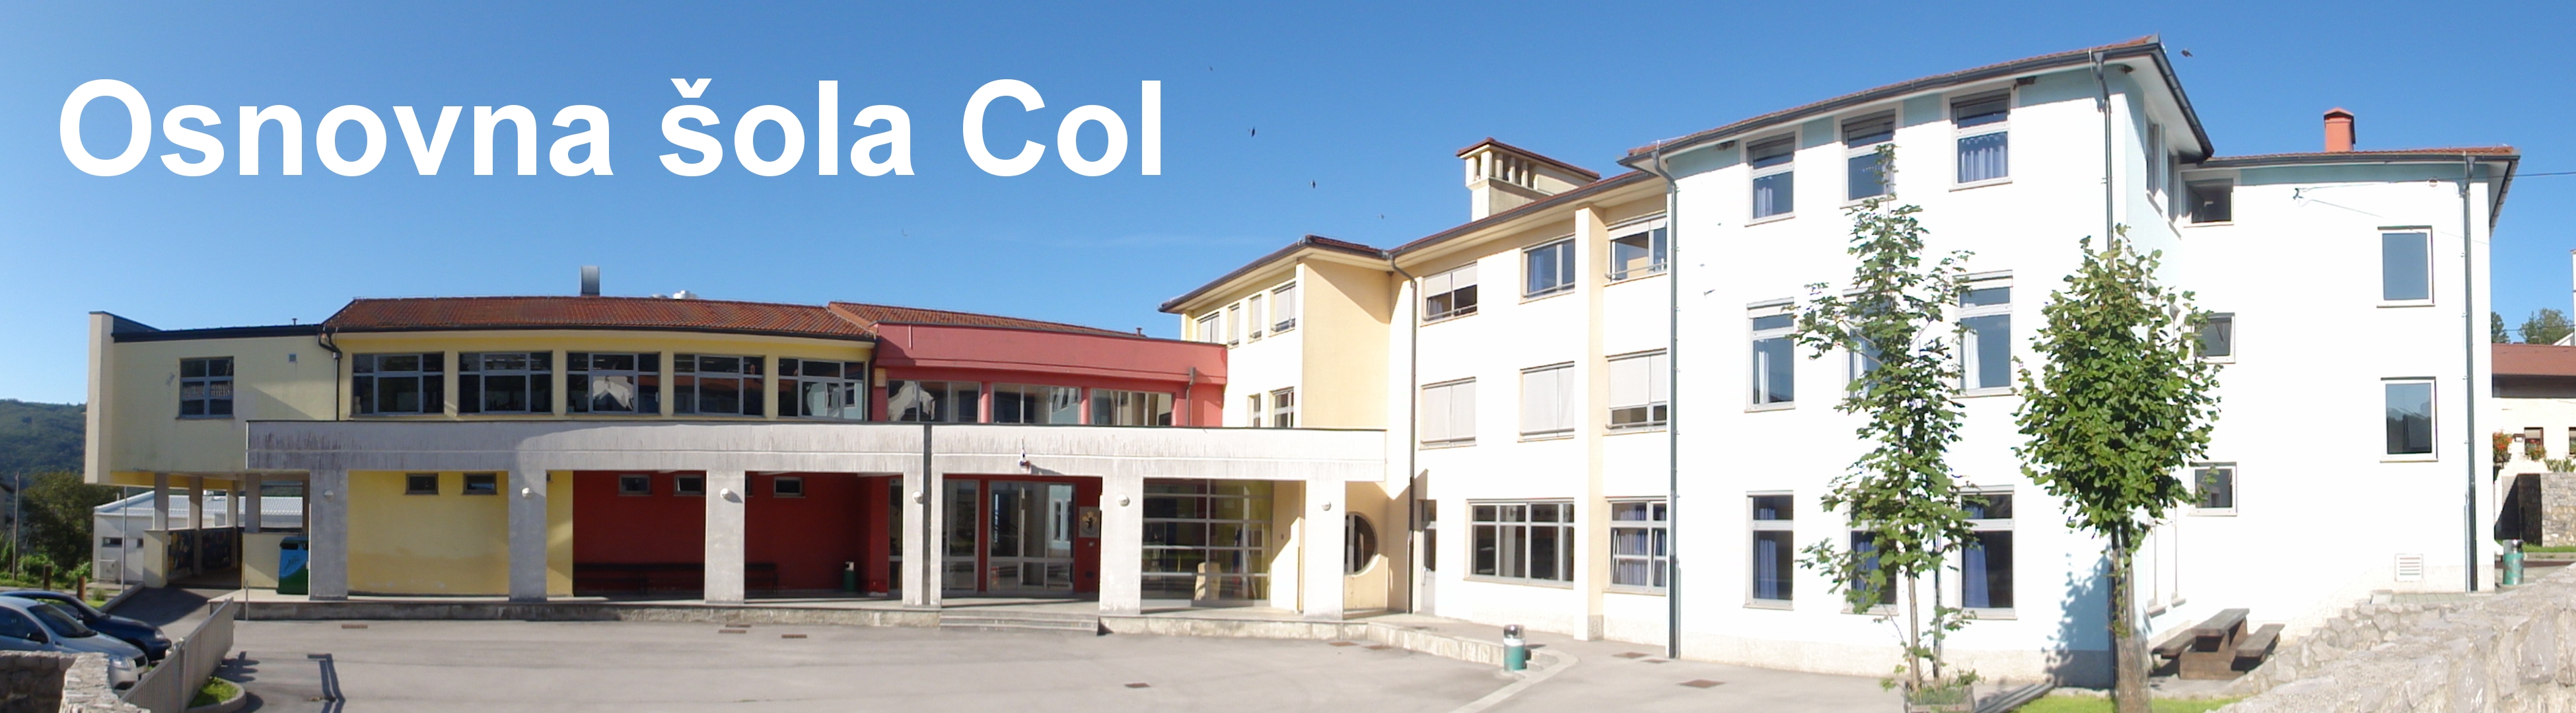 Osnovna šola Col